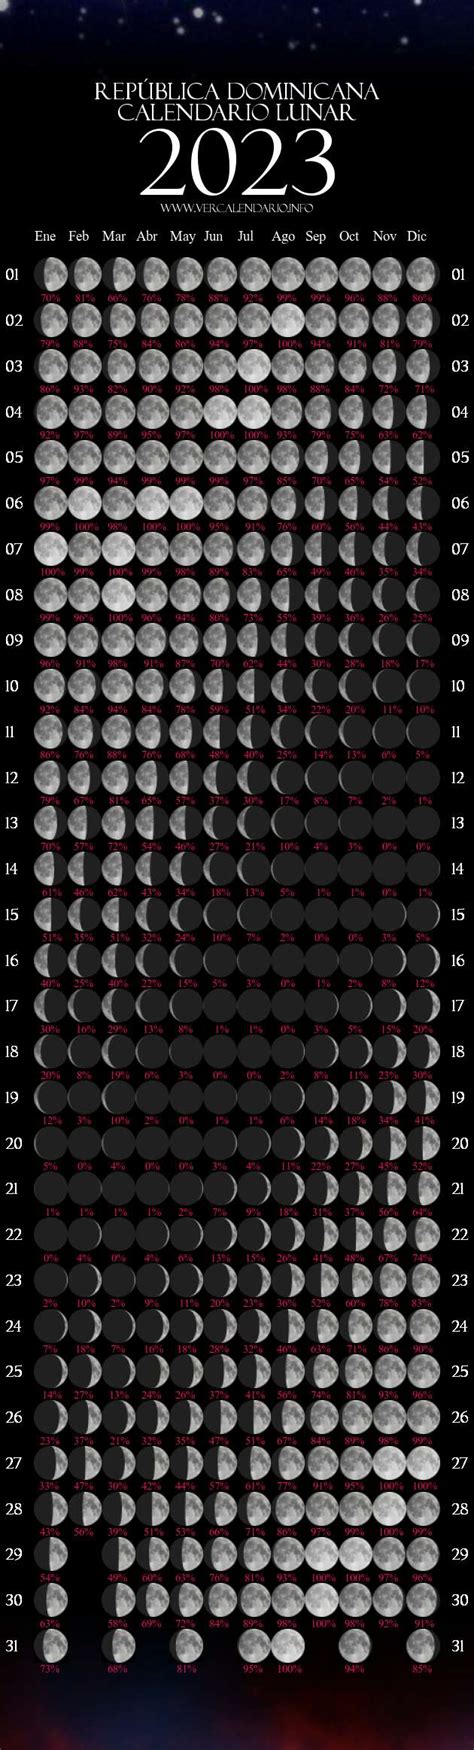 Calendario Lunar Rep Blica Dominicana